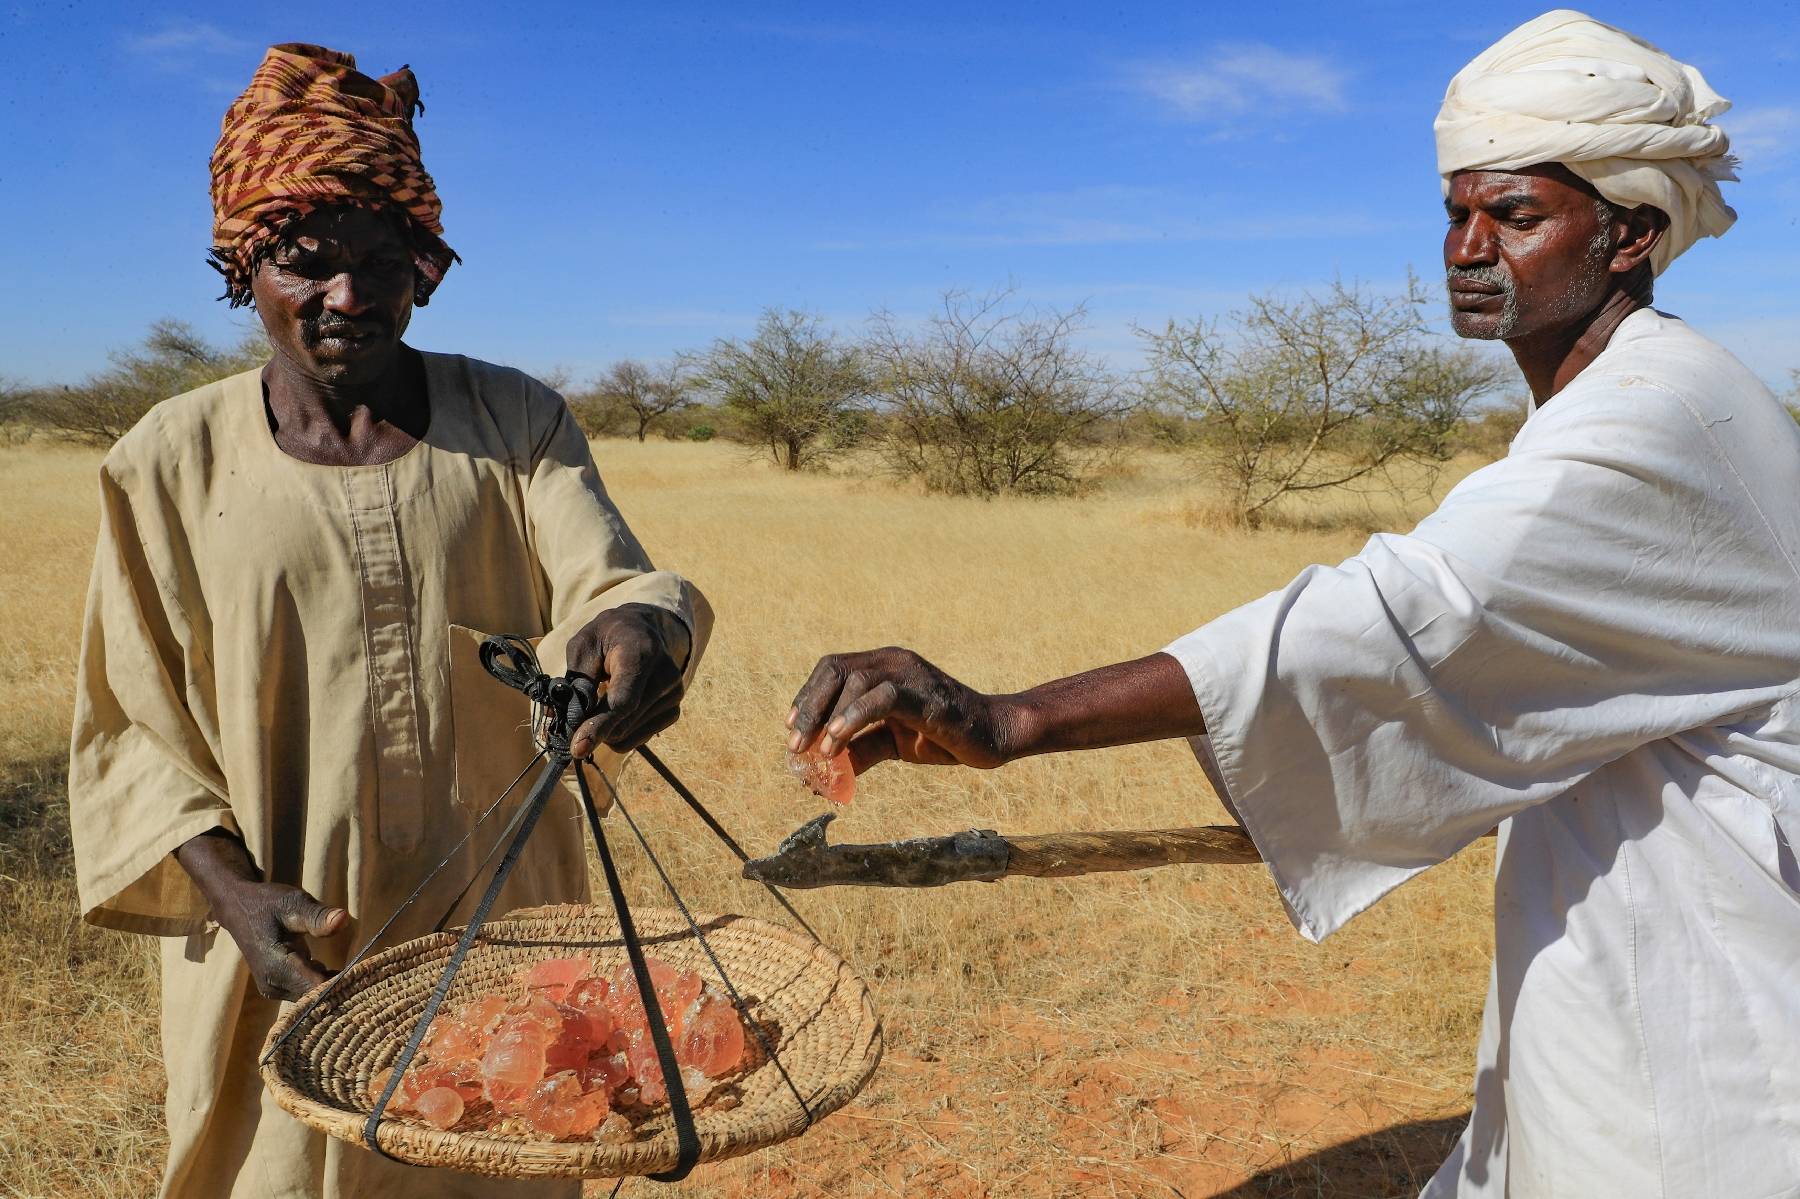 Au Soudan, la gomme arabique résiste au climat extrême, mais l'homme peine à suivre